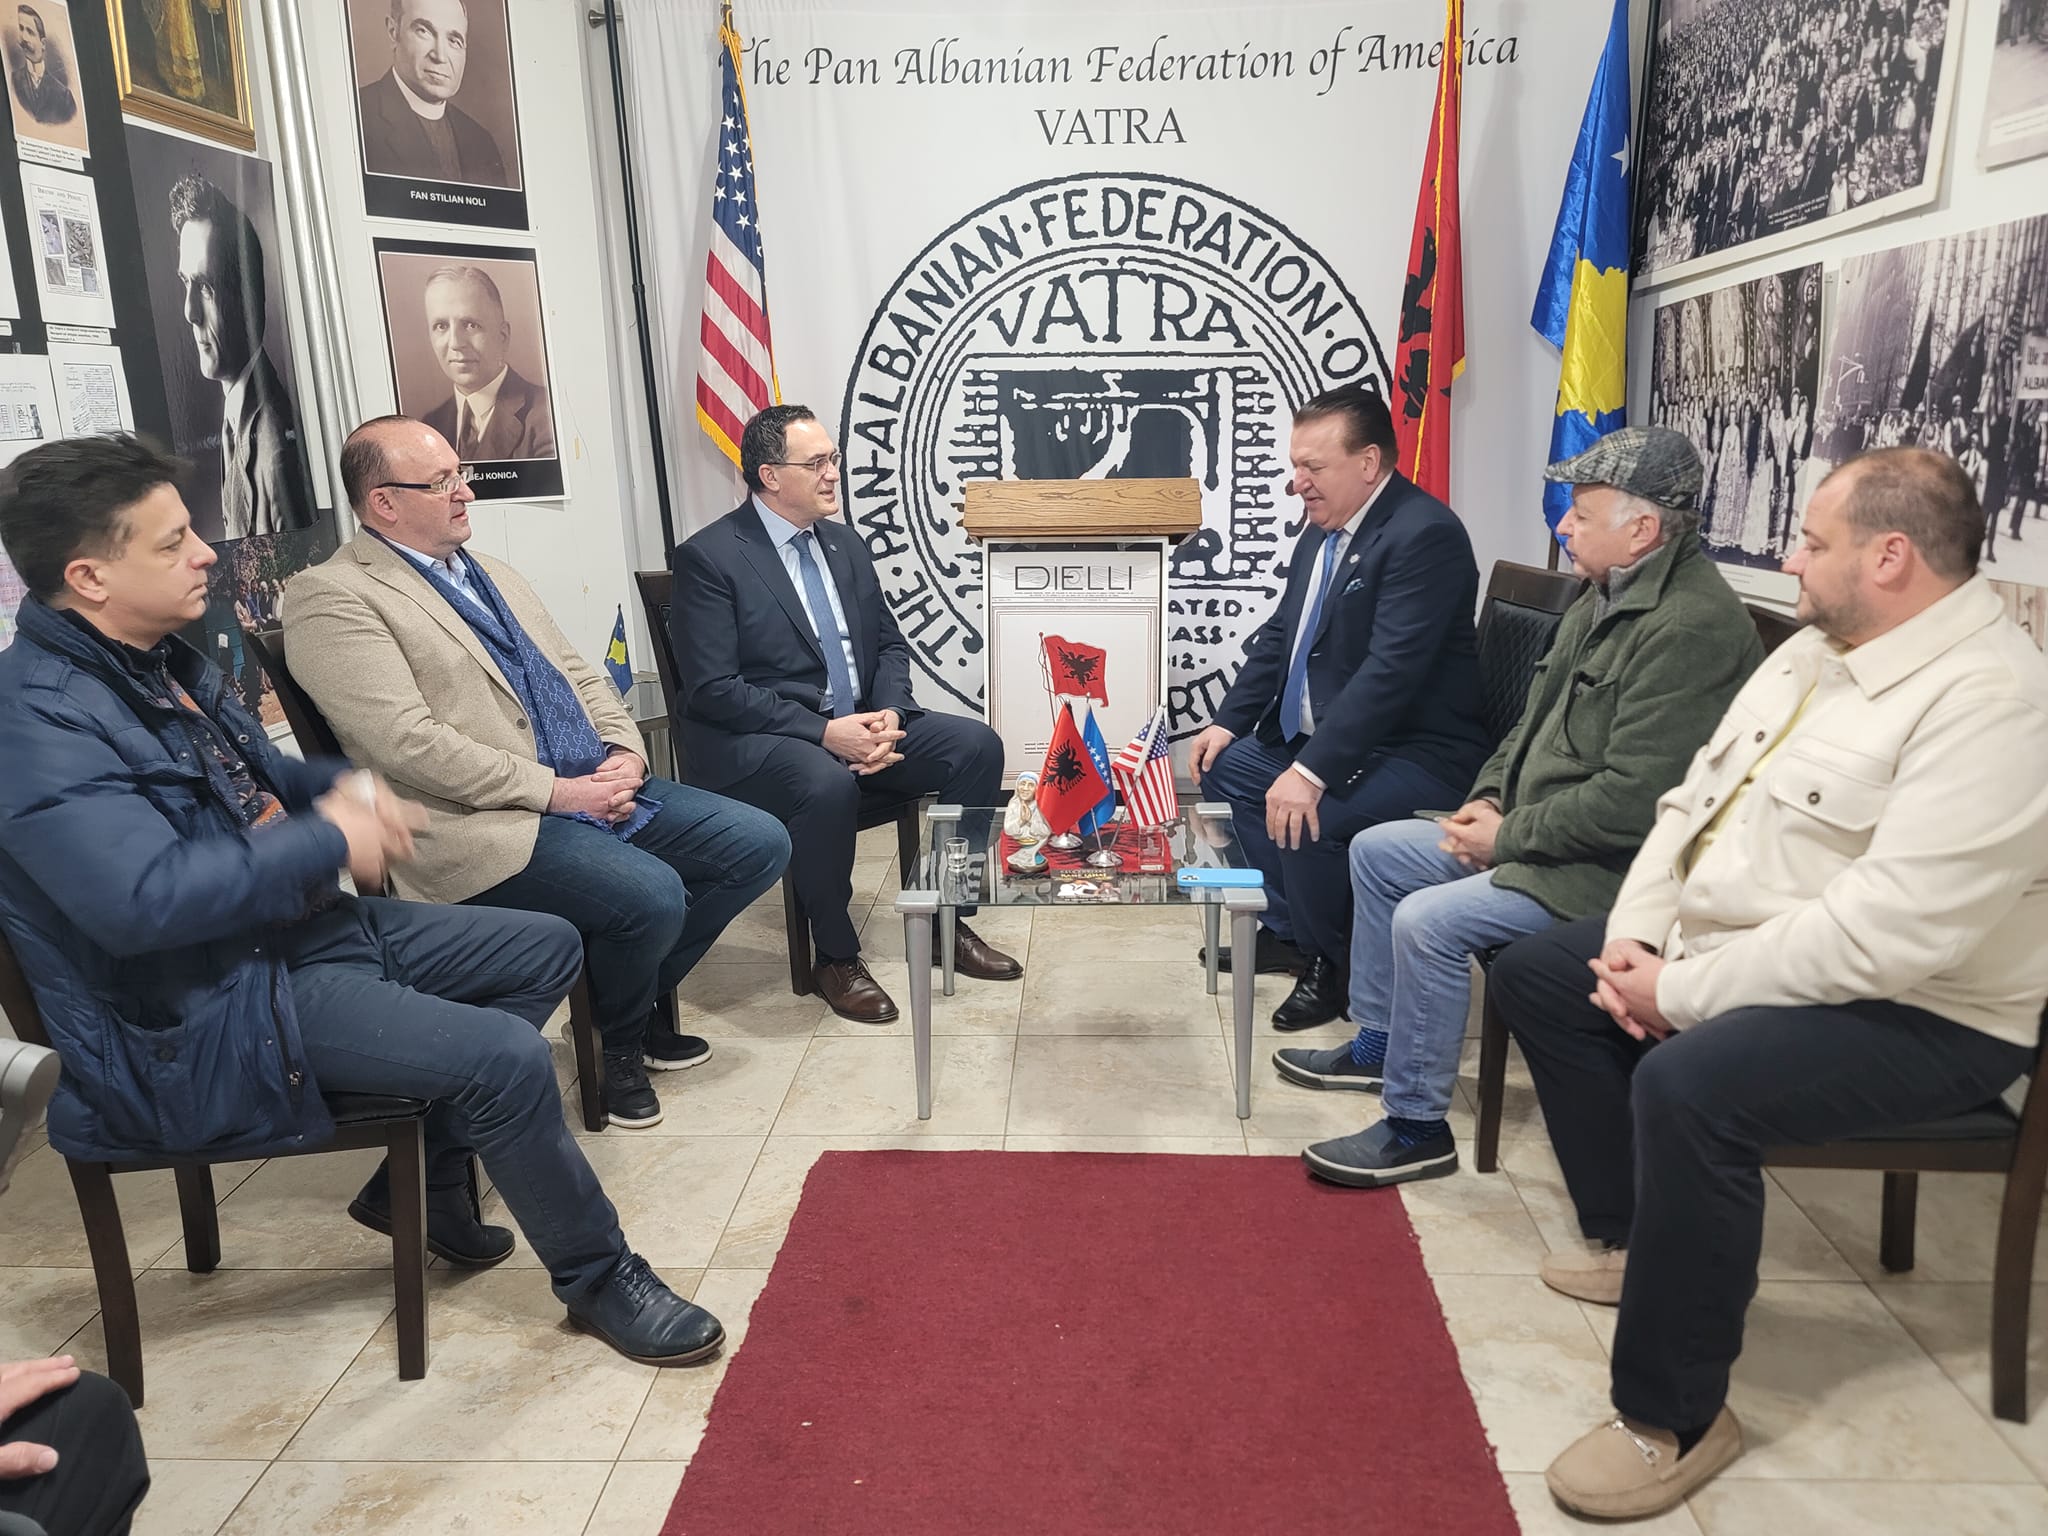 Rektori Hajrizi zhvillon një vizitë zyrtare në Federatën Pan-Shqiptare të Amerikës “Vatra”